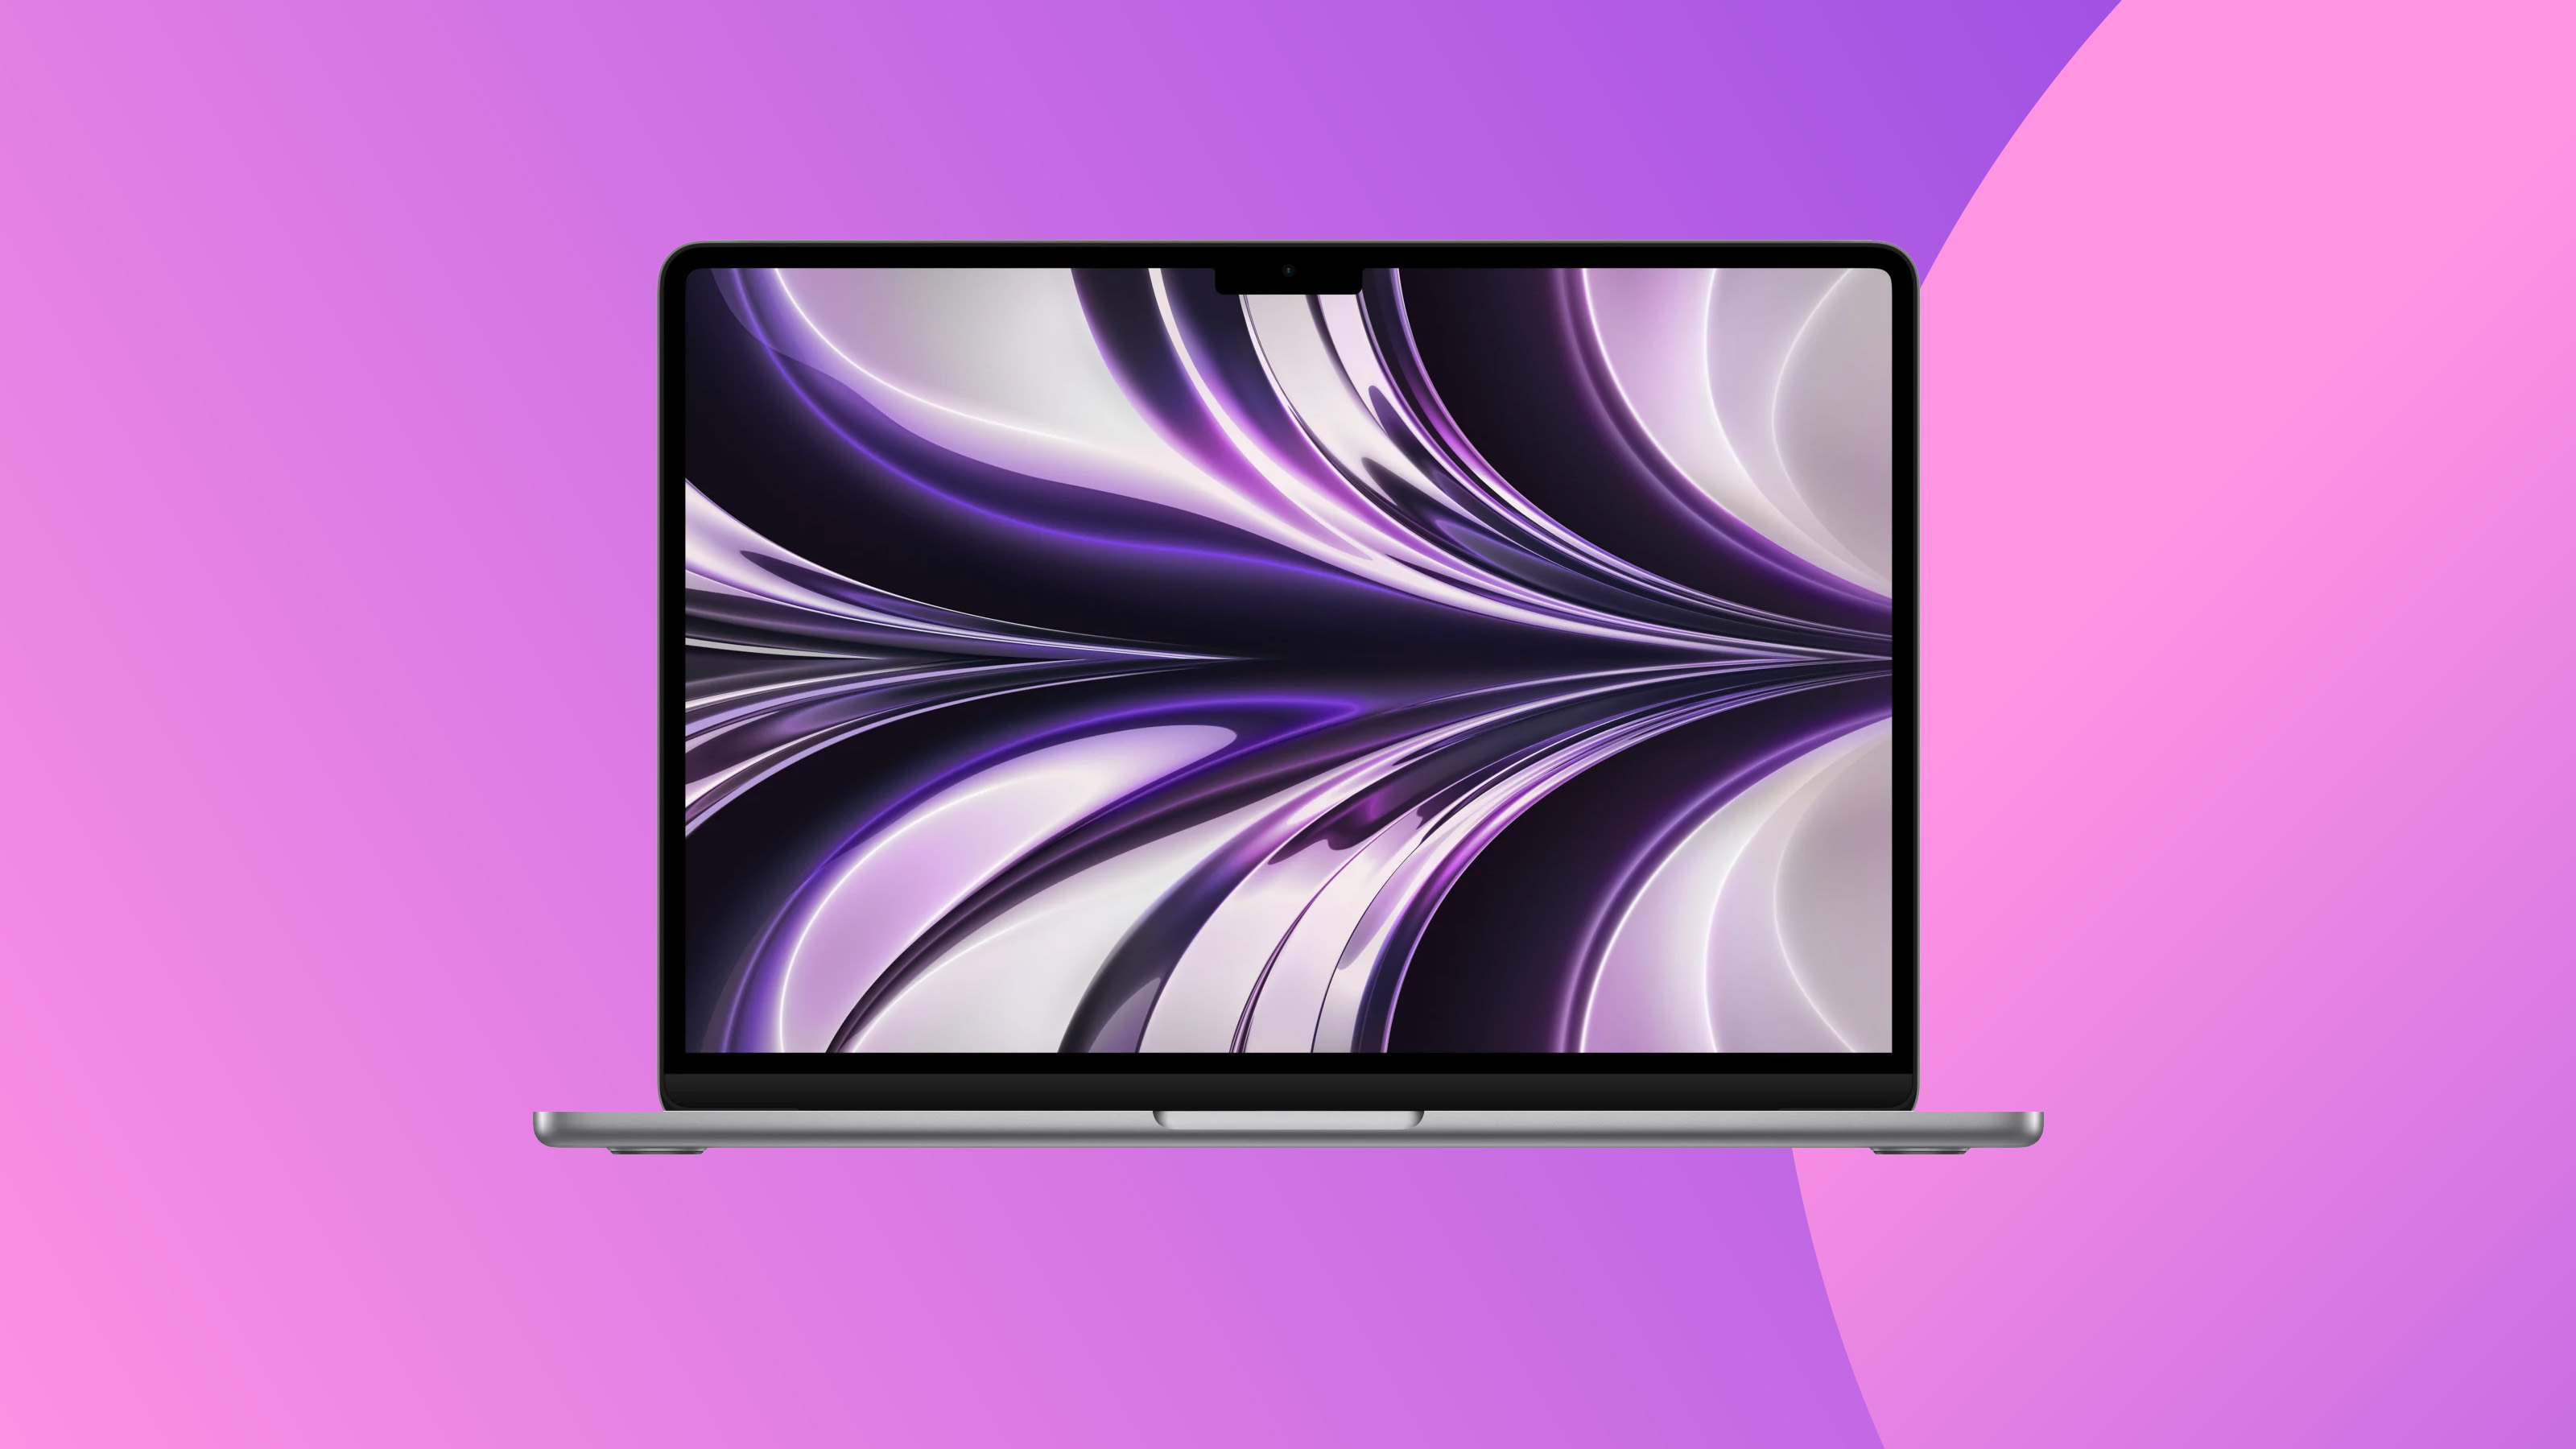 Produktaufnahme des MacBook Air auf farbigem Hintergrund